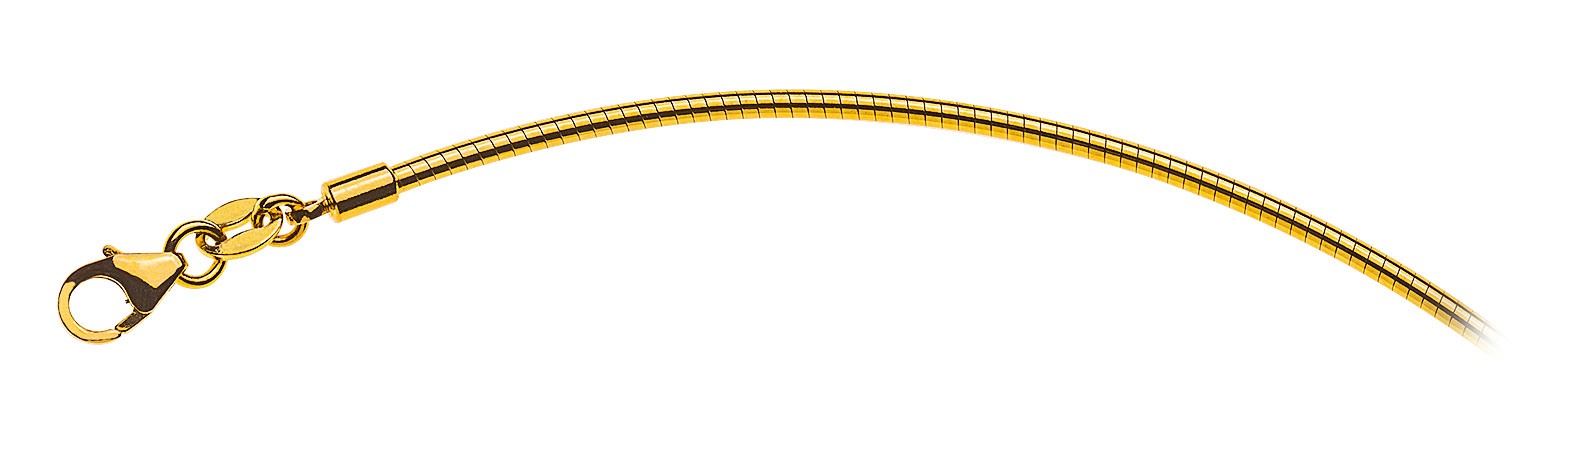 AURONOS Prestige Halskette Gelbgold 18K Omegakette 40cm 1.8mm